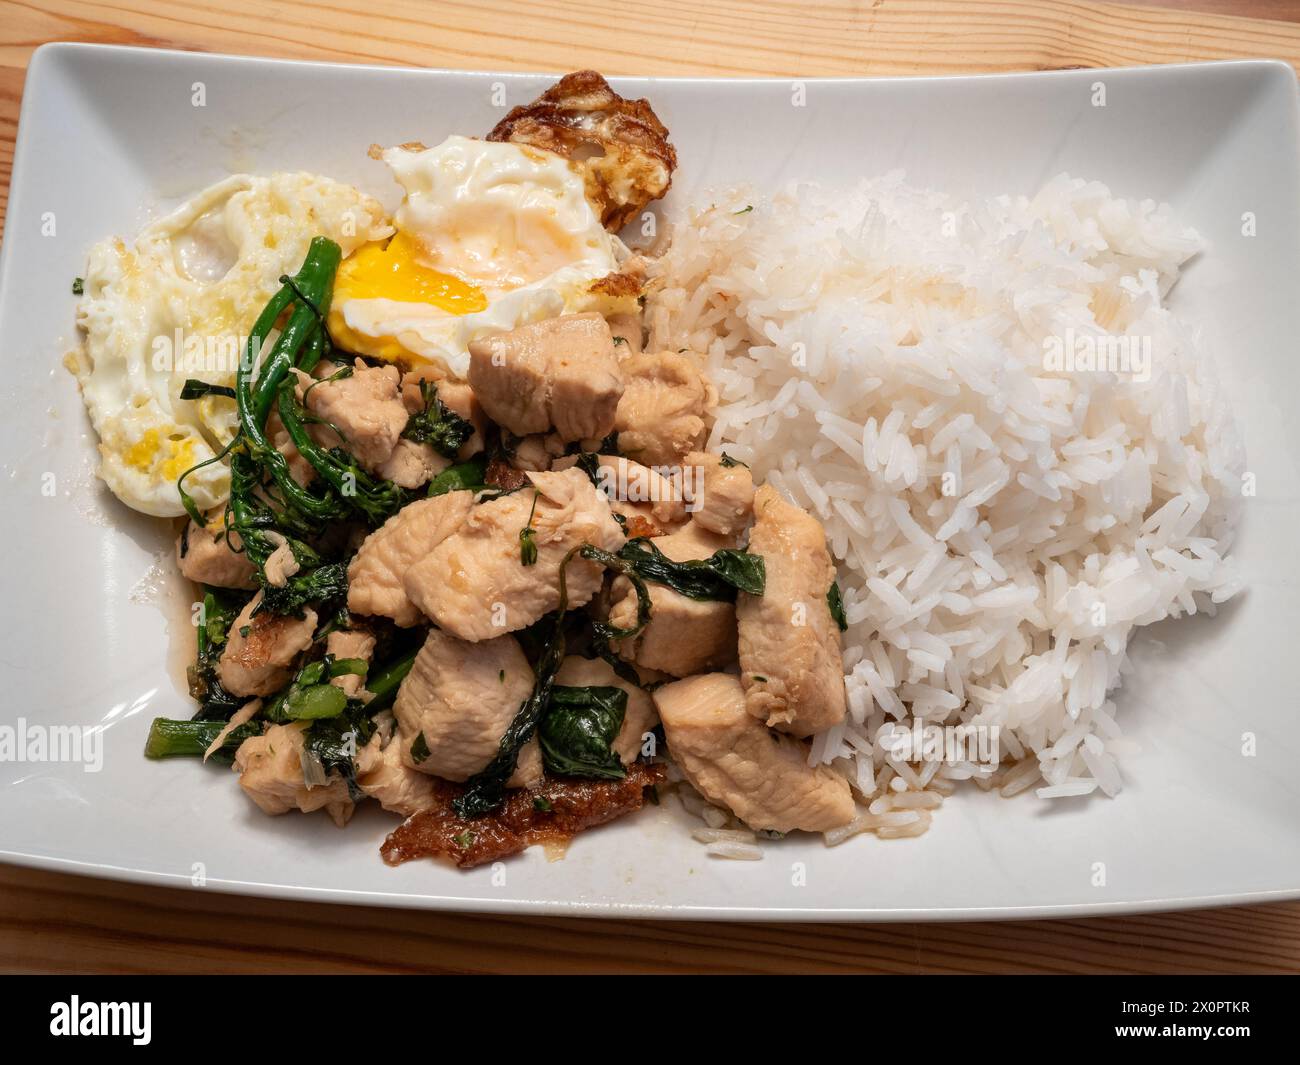 Laissez-vous tenter par les saveurs du poulet au basilic thaïlandais servi avec un œuf parfaitement frit, du broccolini et du riz au jasmin parfumé, élégamment présenté sur un blanc Banque D'Images